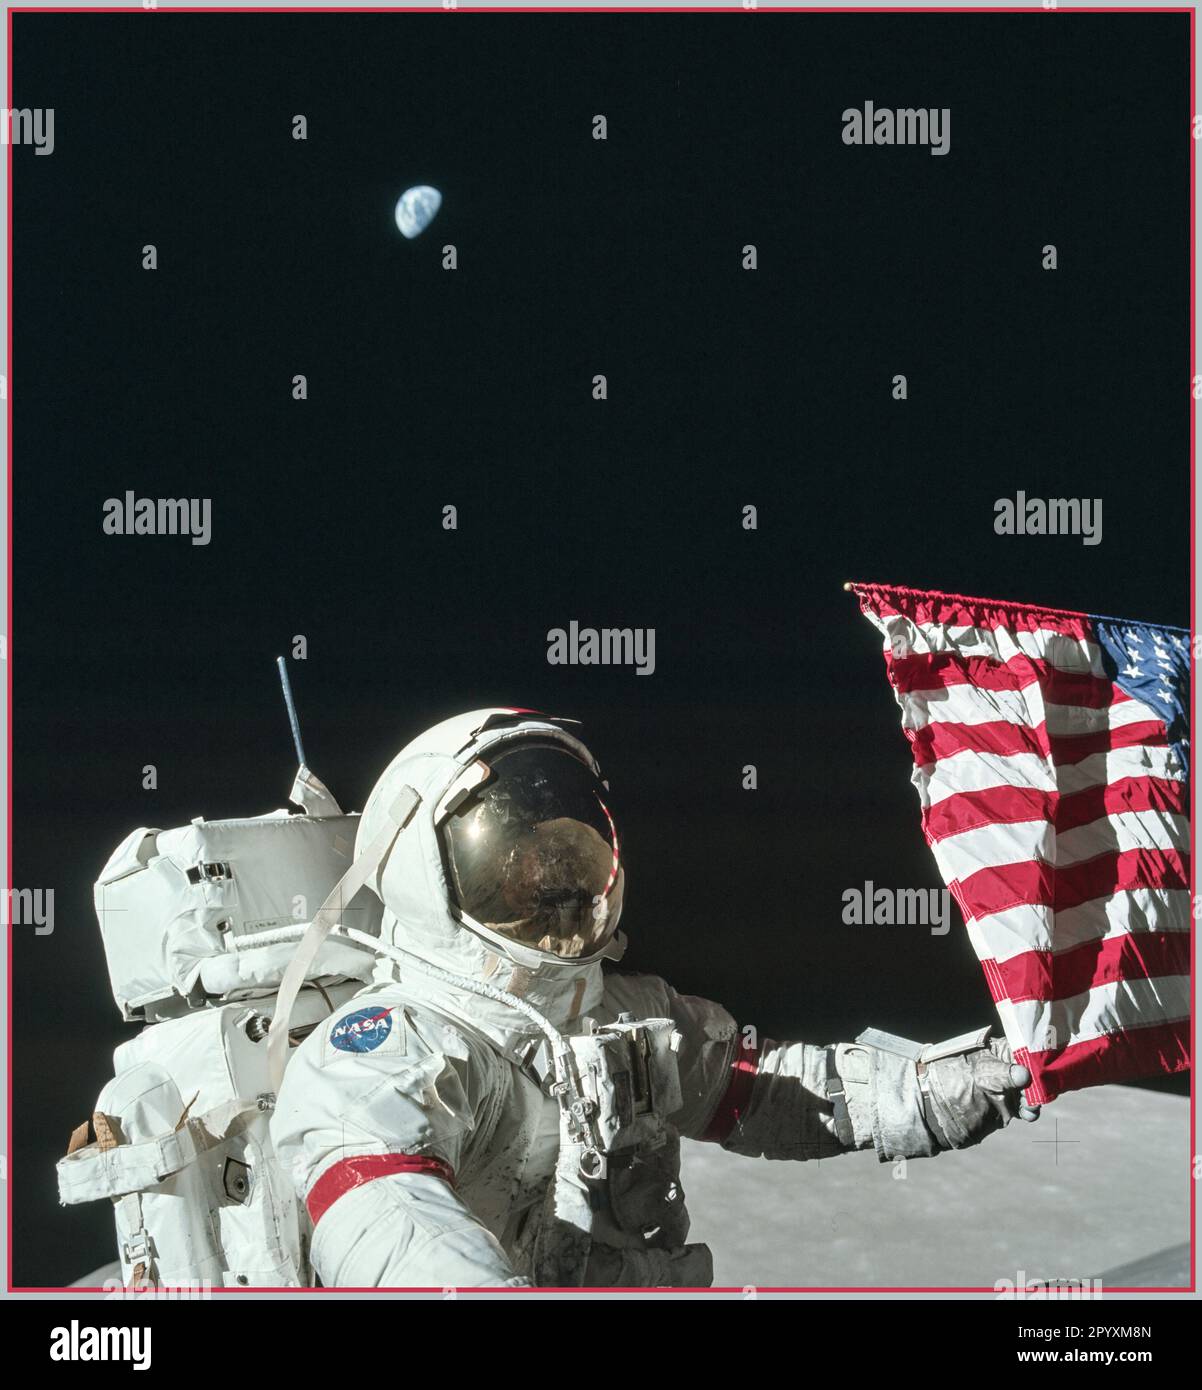 Apollo 17 (7.–19. Dezember 1972) war die elfte und letzte Mission des Apollo-Programms der NASA, das sechste und jüngste Mal, als Menschen einen Fuß auf den Mond gesetzt oder über die Erdumlaufbahn hinaus gereist sind. Commander Gene Cernan und Pilot des Mondmoduls Harrison Schmitt liefen auf dem Mond, während Kommandomodulpilot Ronald Evans darüber umkreiste. Schmitt war der einzige professionelle Geologe, der auf dem Mond landete. Apollo 17 Hasselblad Bild aus dem Kodak Filmmagazin 1972 Stockfoto